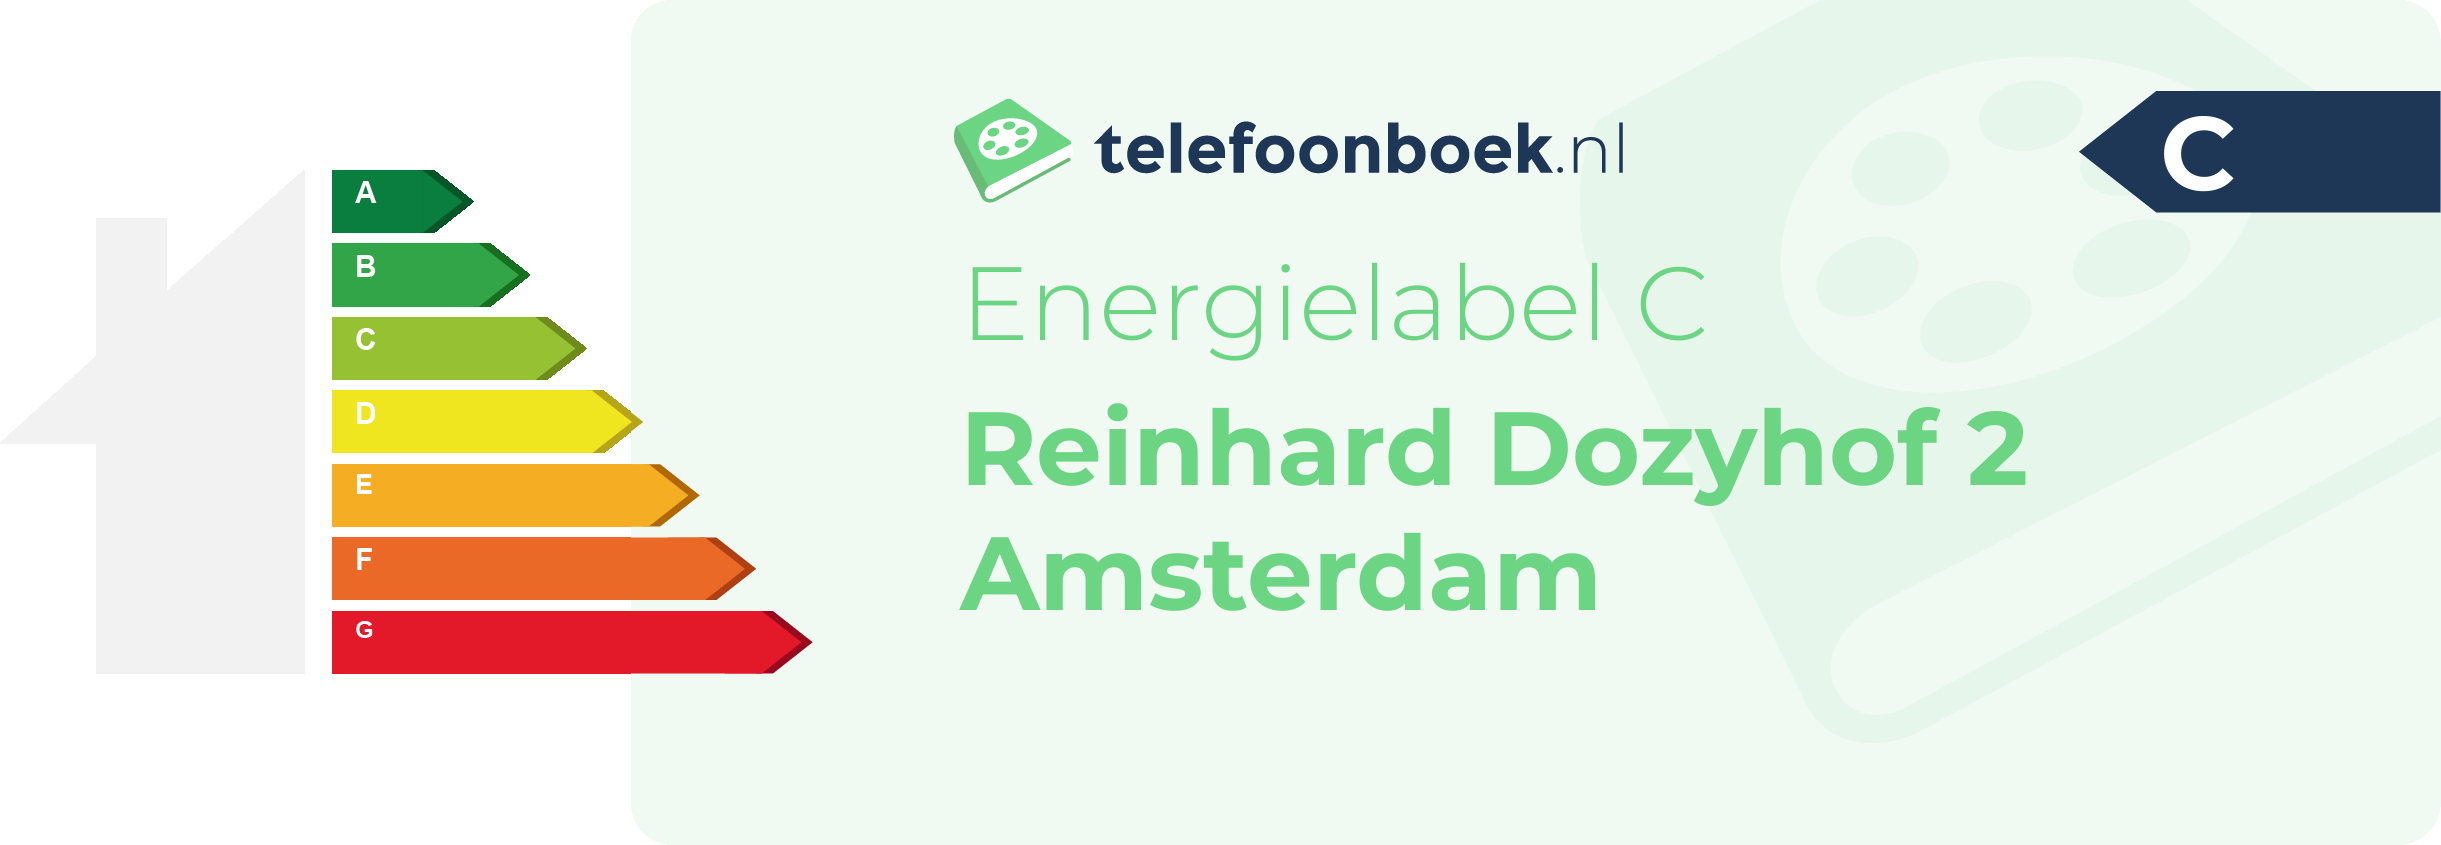 Energielabel Reinhard Dozyhof 2 Amsterdam